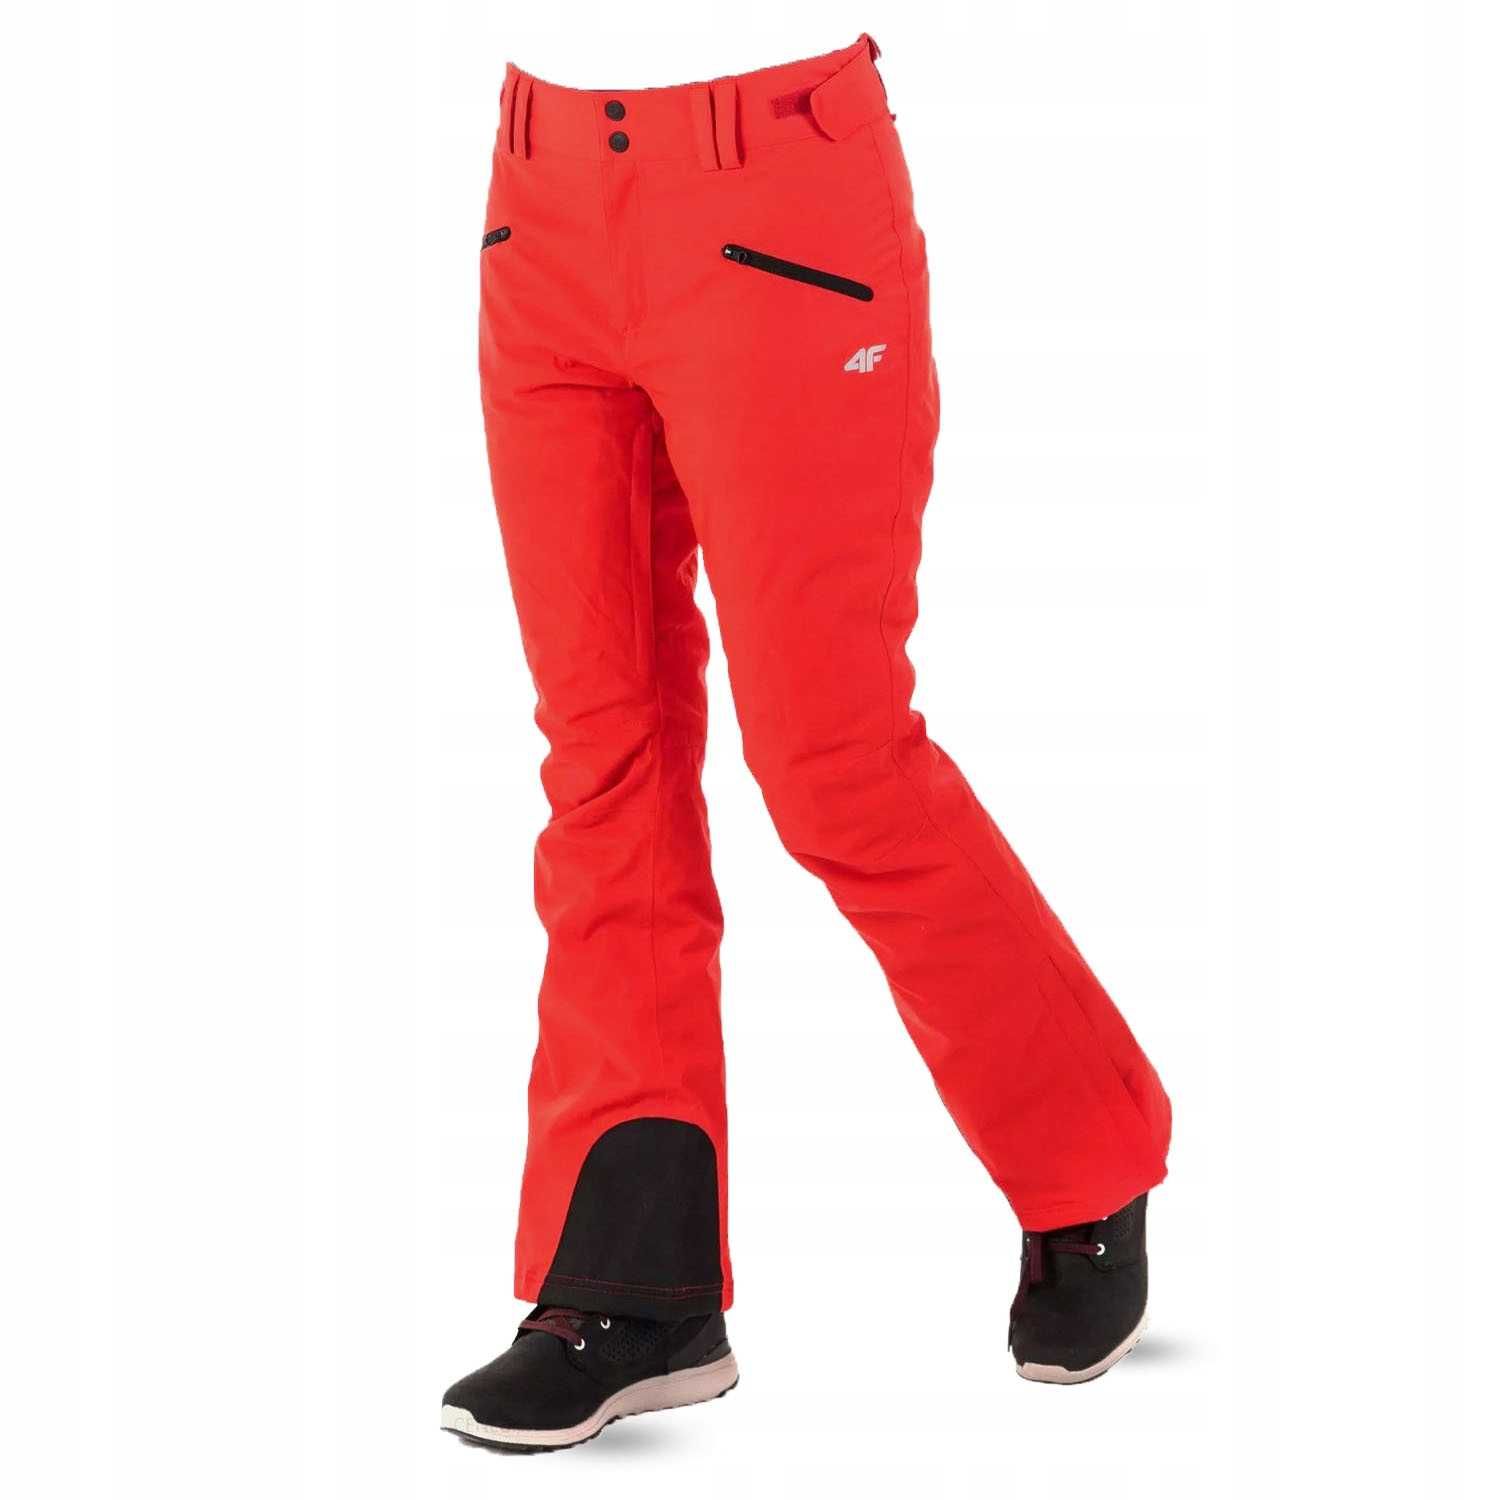 NOWE damskie spodnie narciarskie 4F SPDN002 rozm XL czerwone